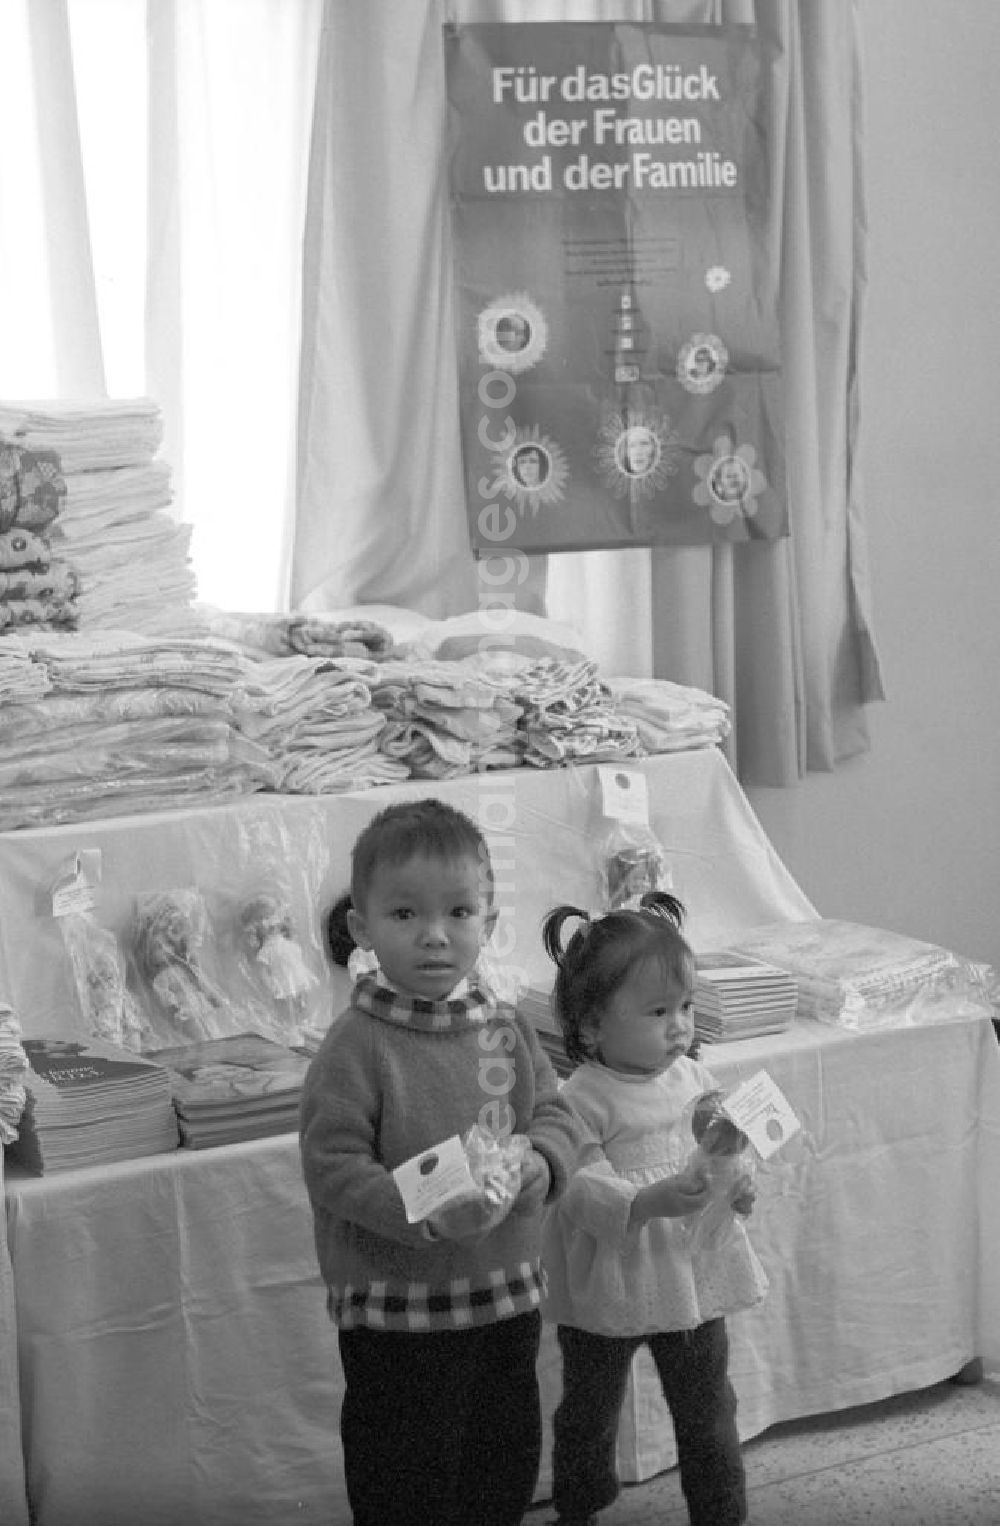 GDR photo archive: Vientiane - Der Botschafter der DDR, Günter Horn, überreicht in Vientiane in der Demokratischen Volksrepublik Laos eine aus der DDR stammende Solispende - darunter Puppen und Spielzeug für die Kinder - für das Glück der Frauen und der Familie.